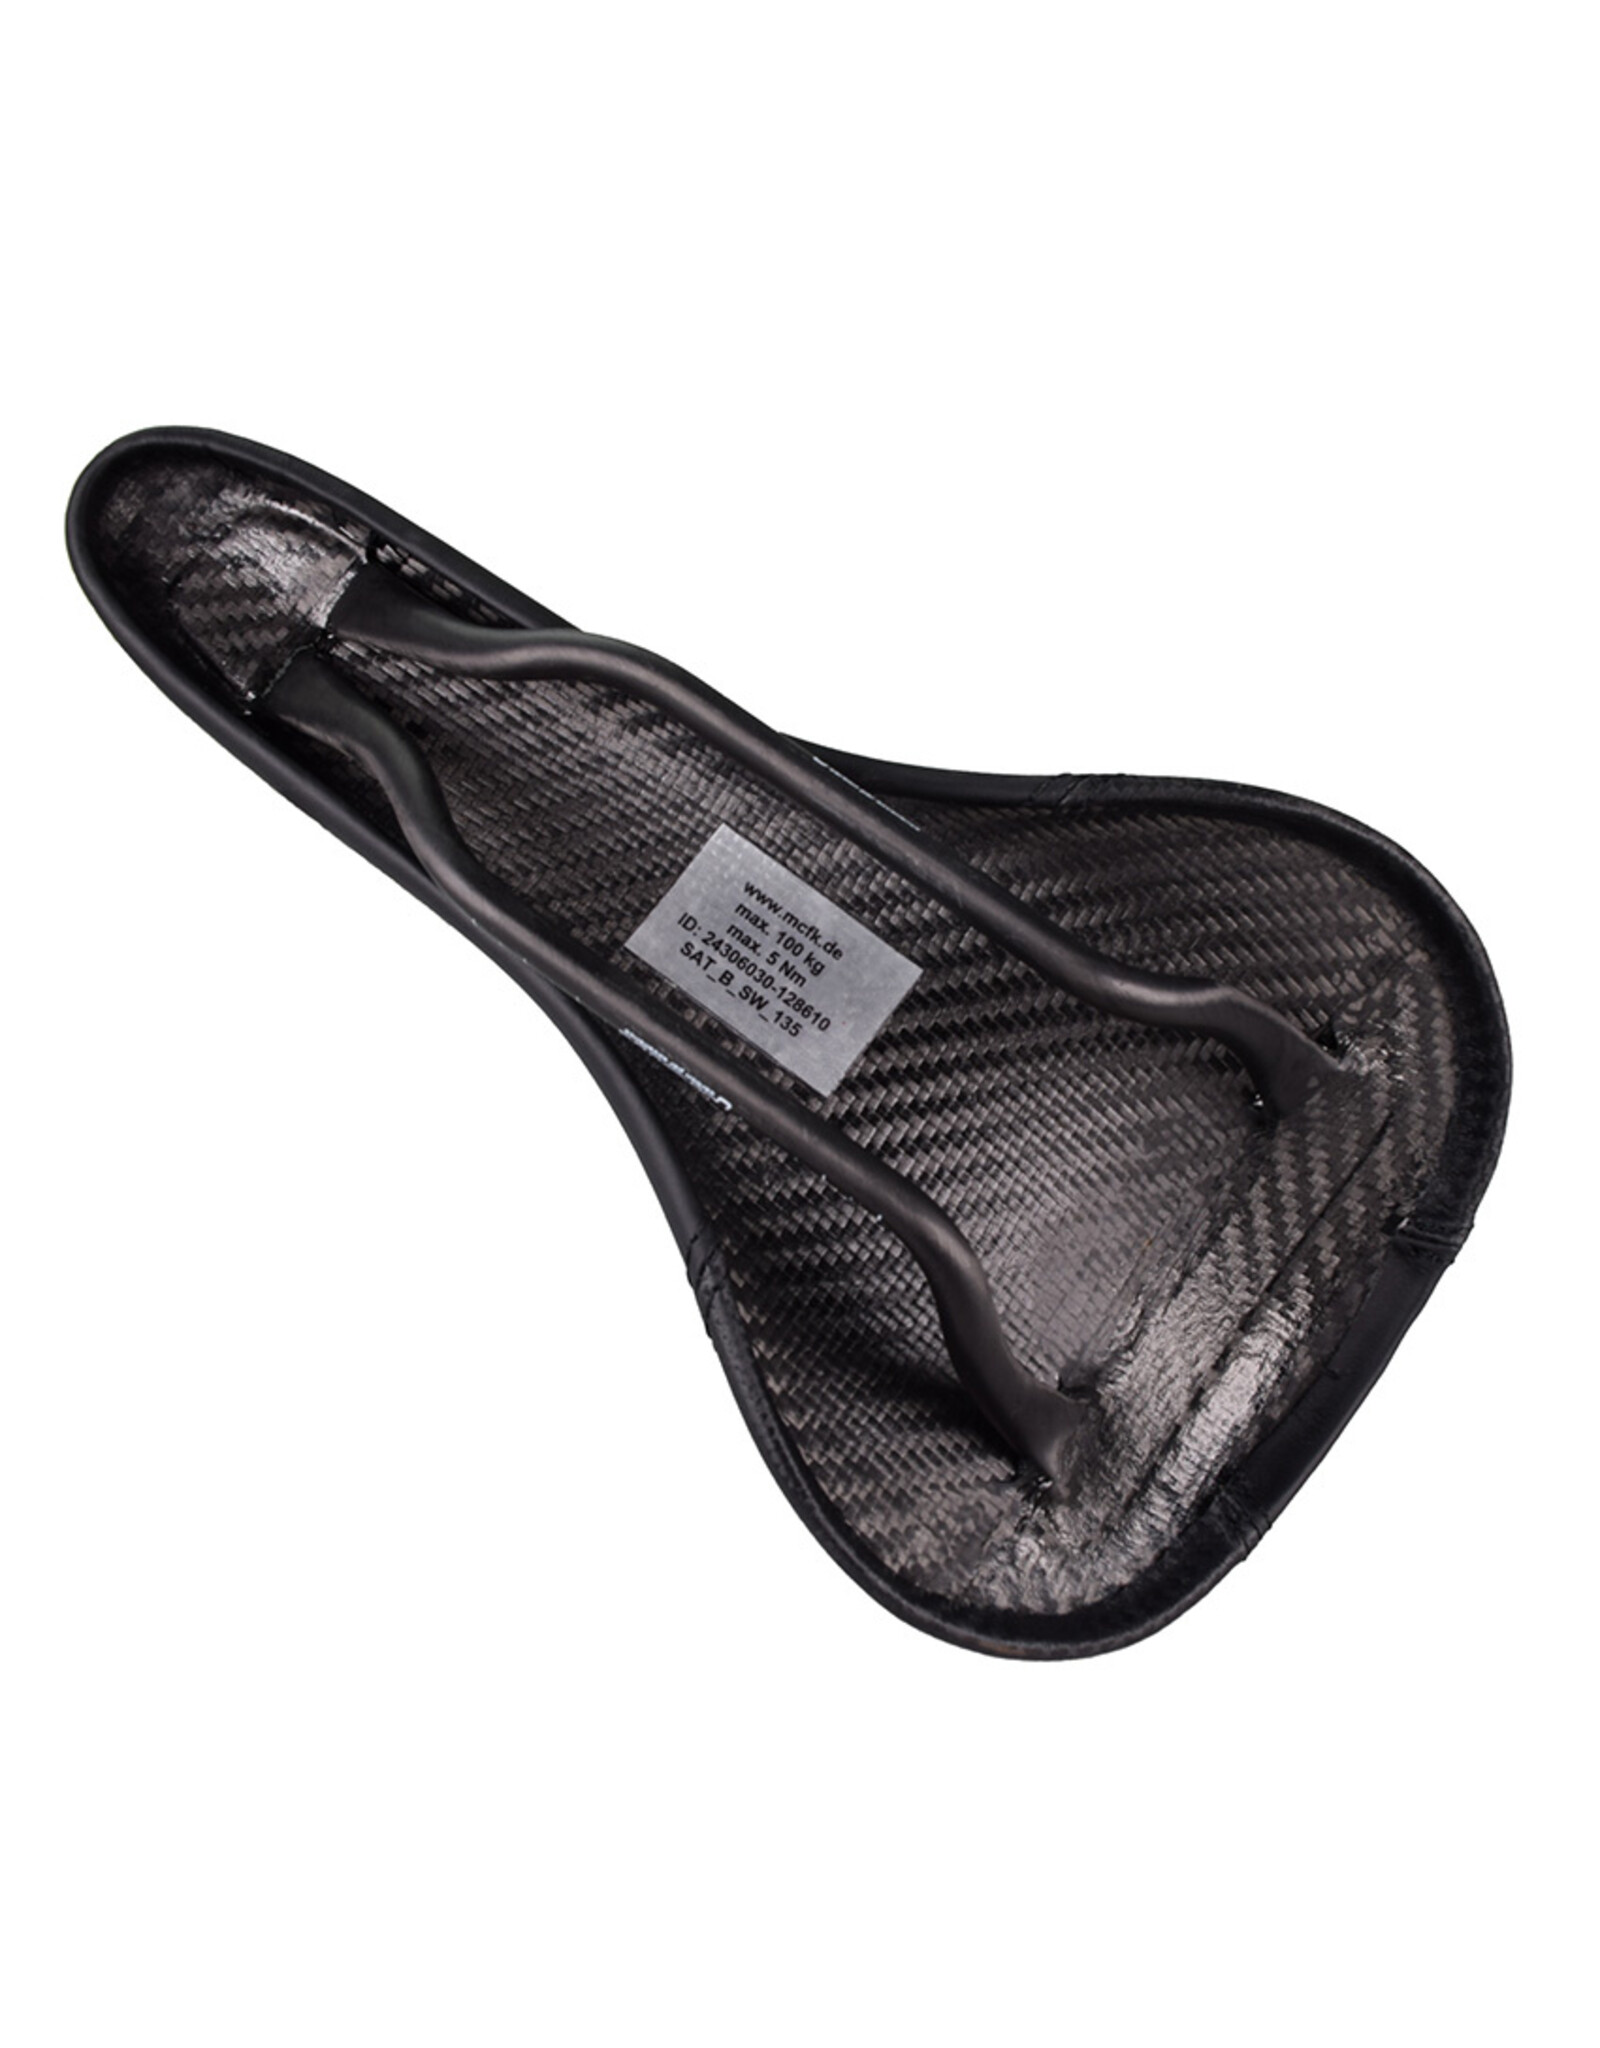 Mcfk Mcfk Leather Carbon Saddle